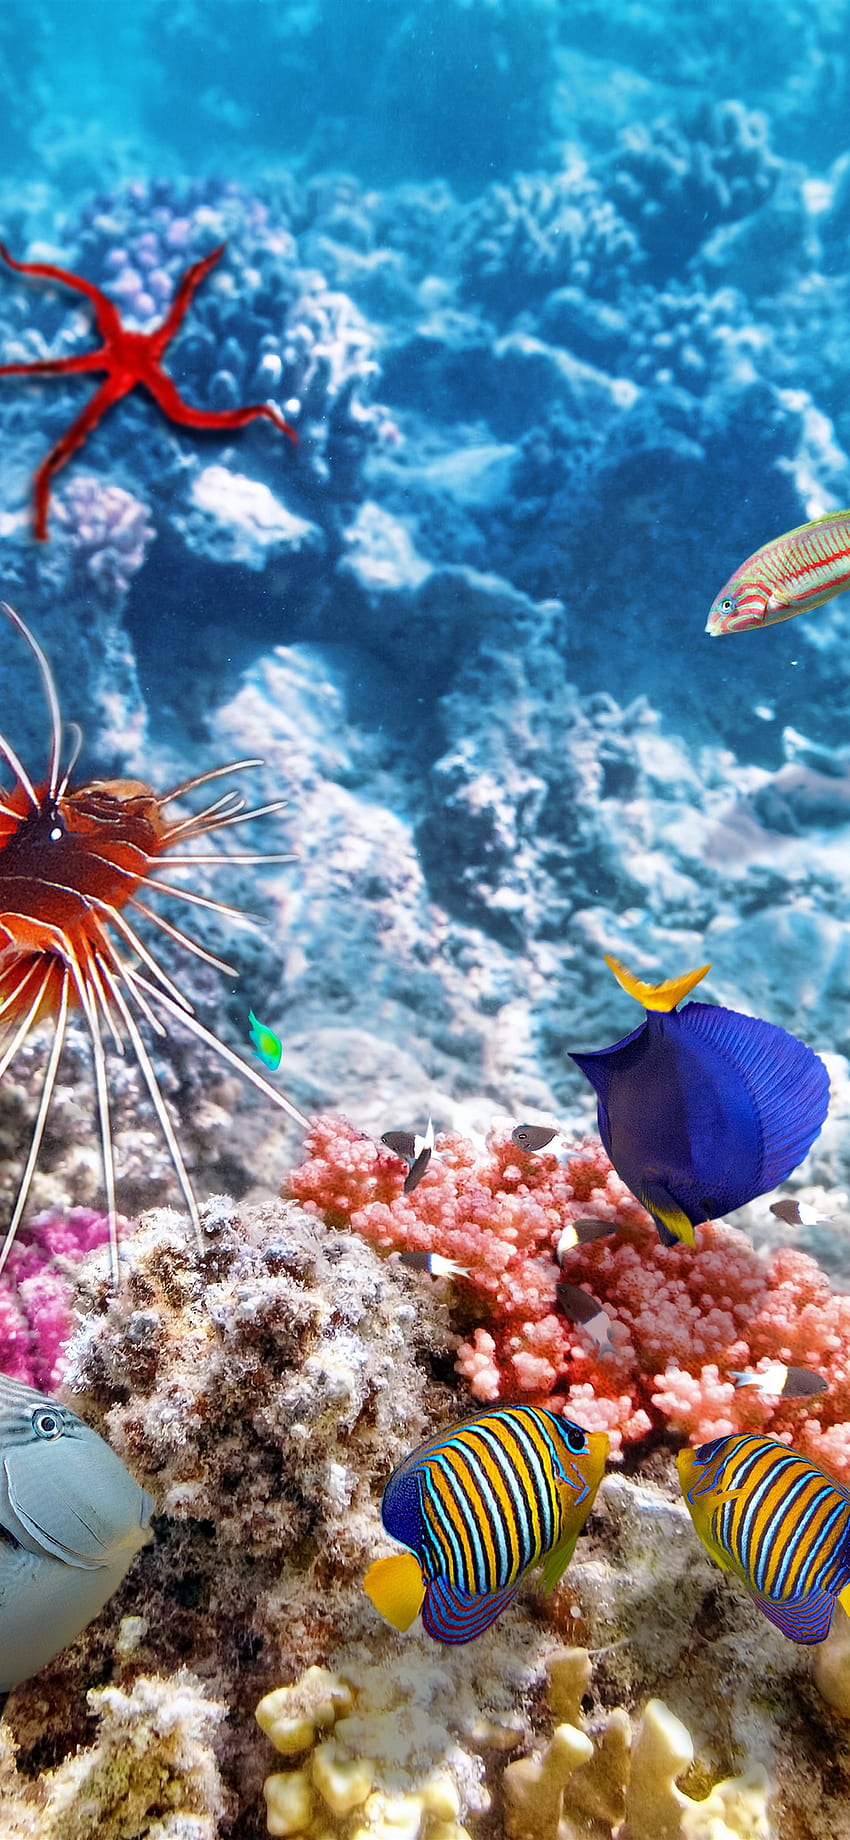 Peces de colores, bajo el agua, mar, pez payaso - -, océano bajo el agua iPhone fondo de pantalla del teléfono